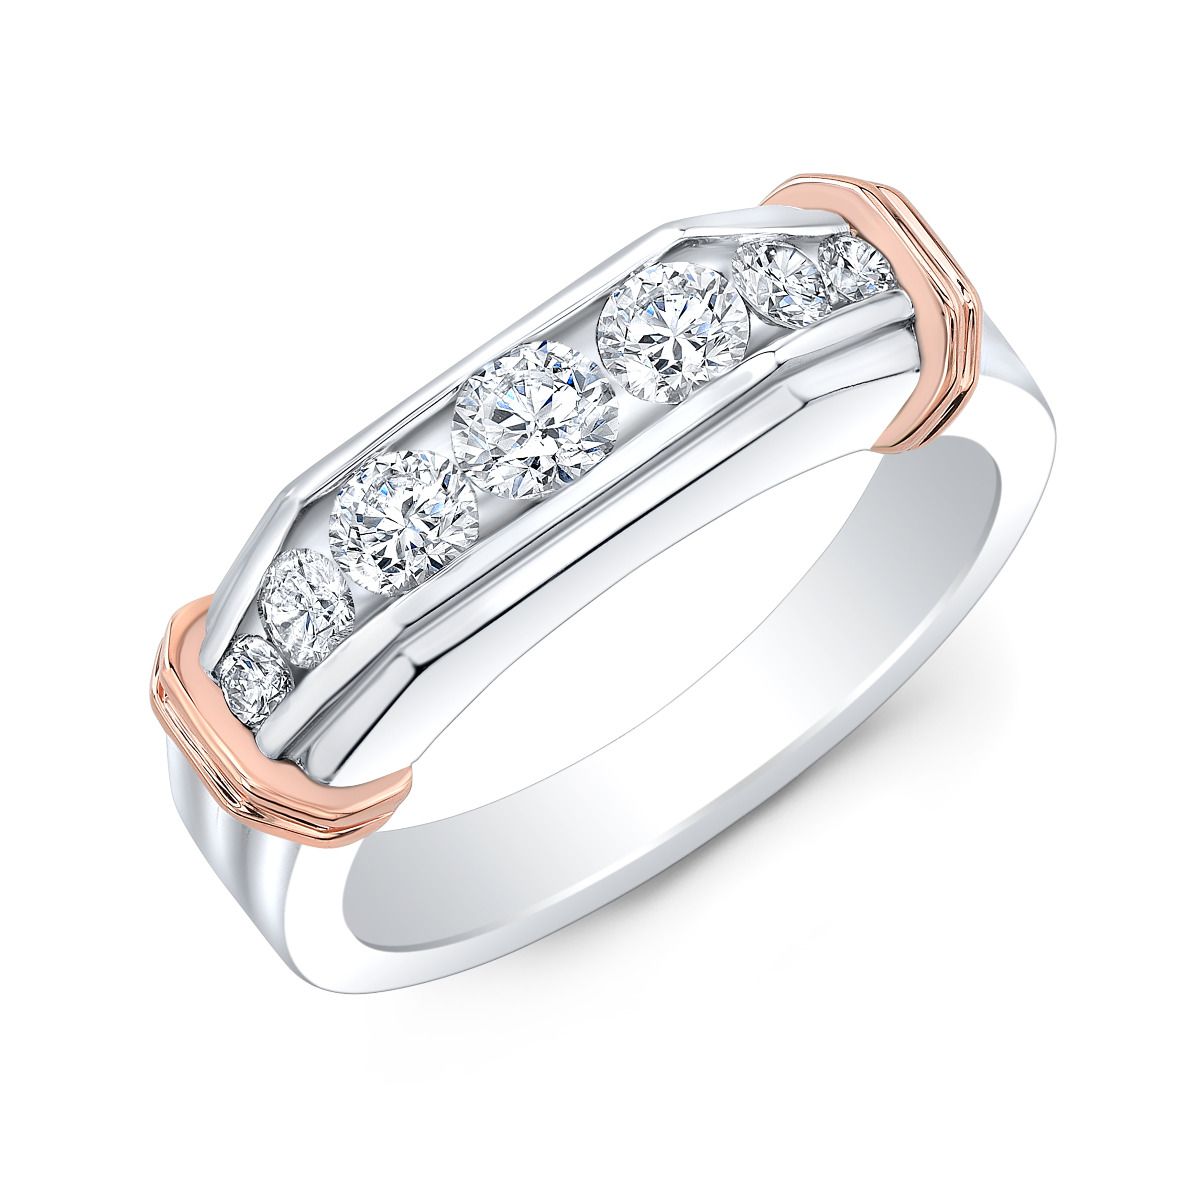 Silver Men's Moissanite Engagement Ring 1 - 3ct Center Stone – Luxus  Moissanite